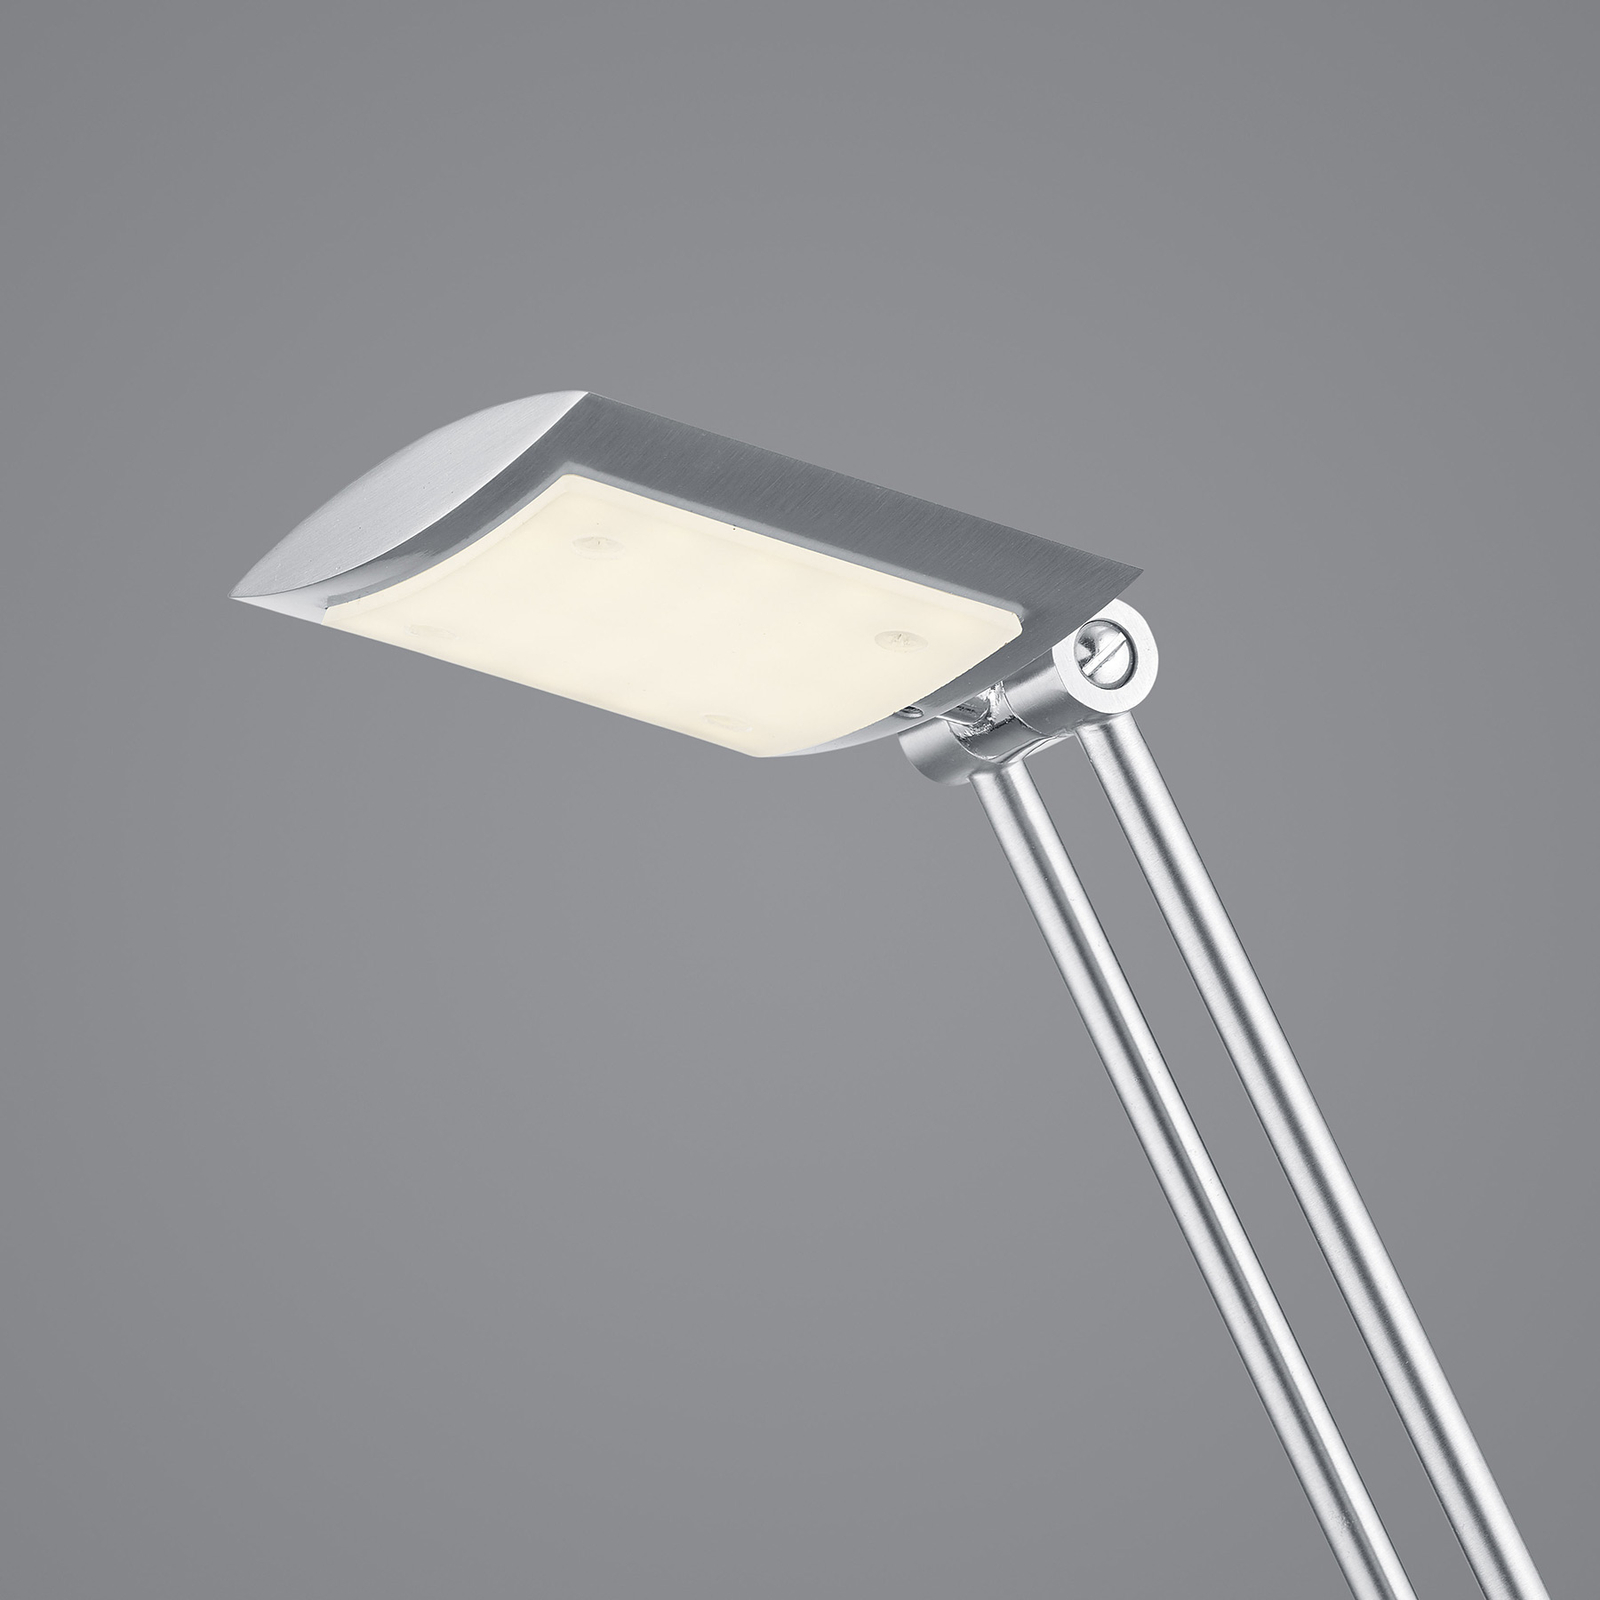 LED stojací lampa Wim 2-světelná čtecí lampa nikl/chrom